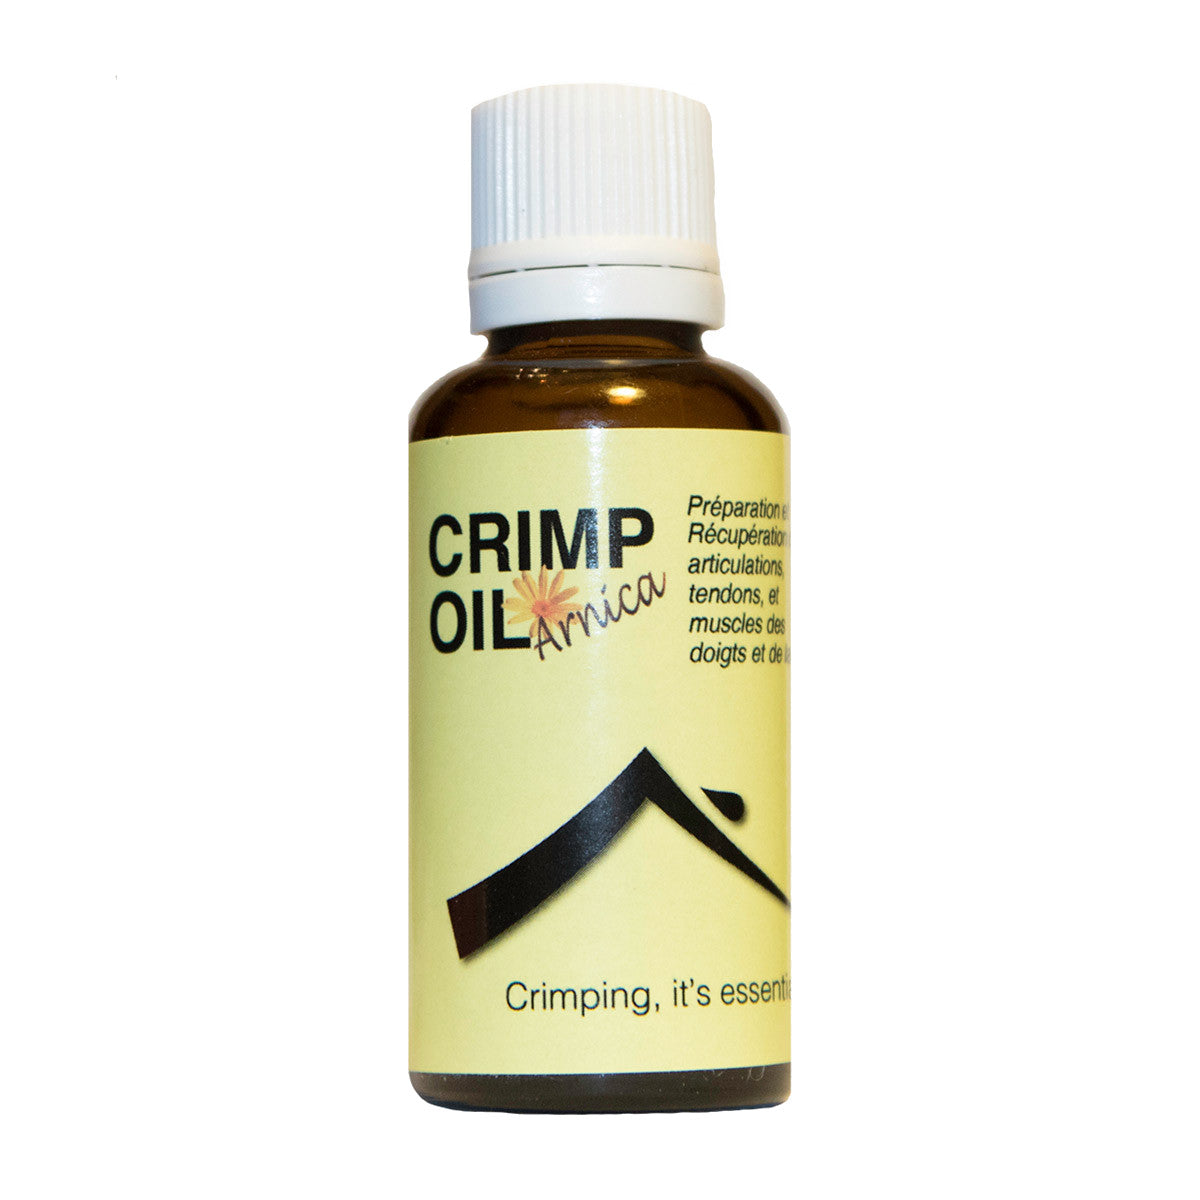 Crimp Oil Arnica skin care massage oil 30 ml bottle with white lid